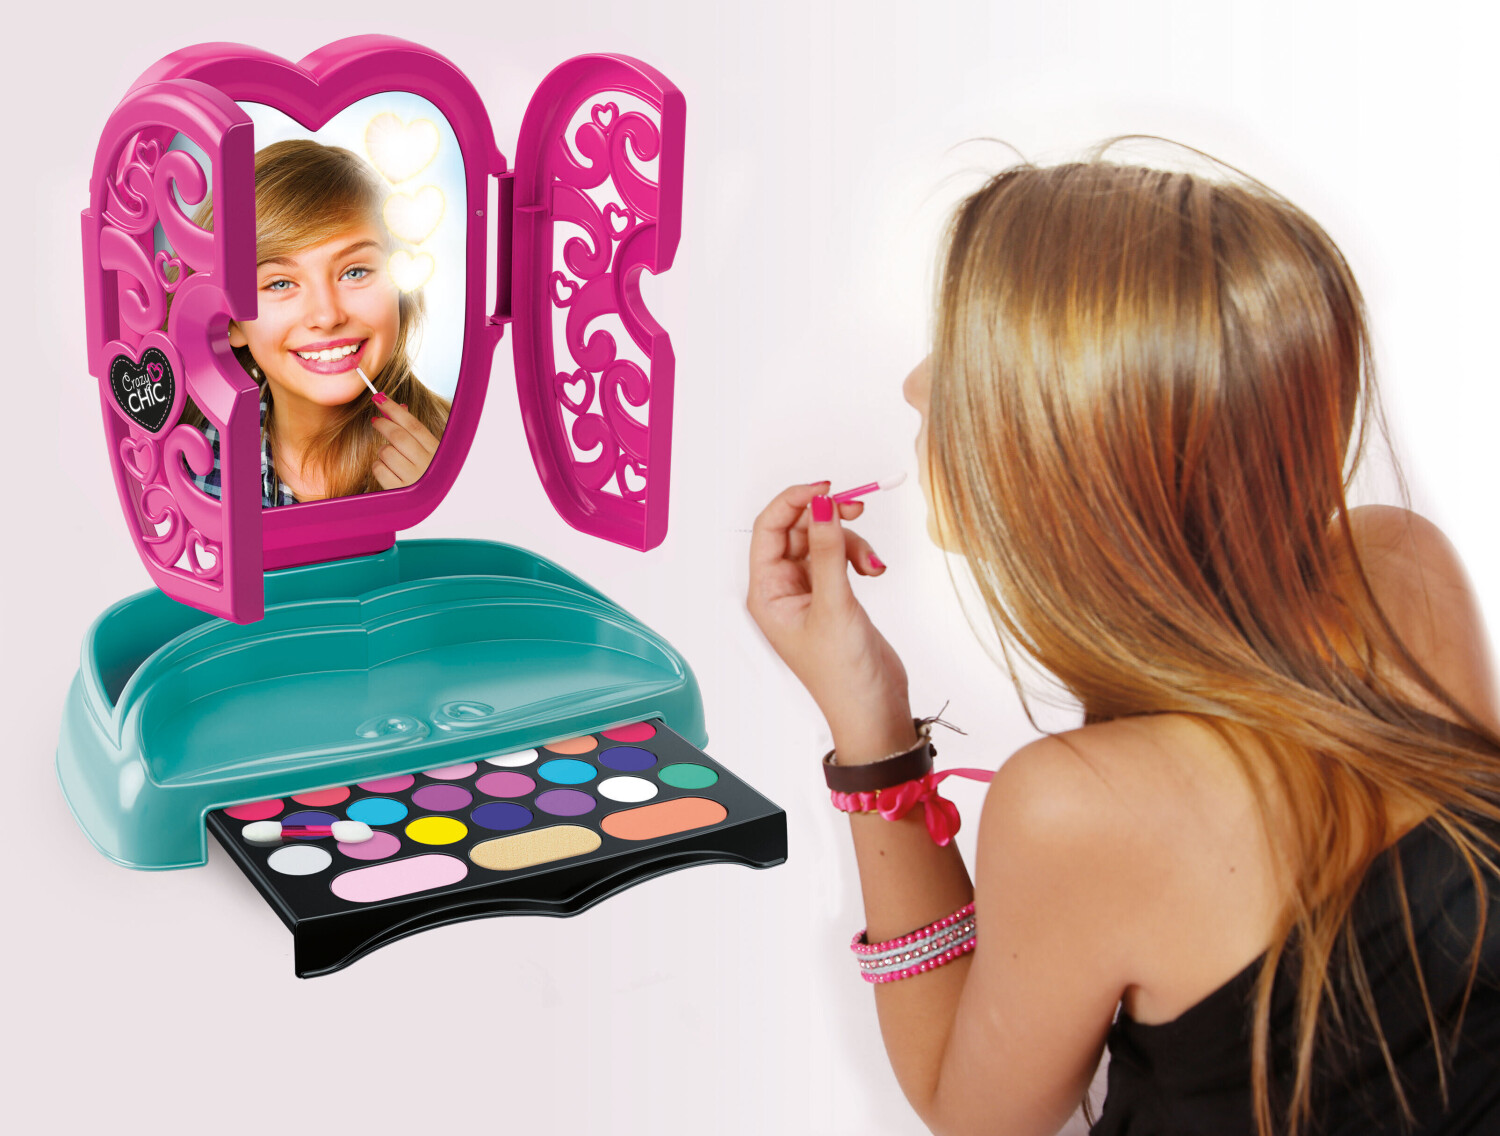 Luxus Kinder Make up Set mit Spiegel bei Marktkauf online bestellen